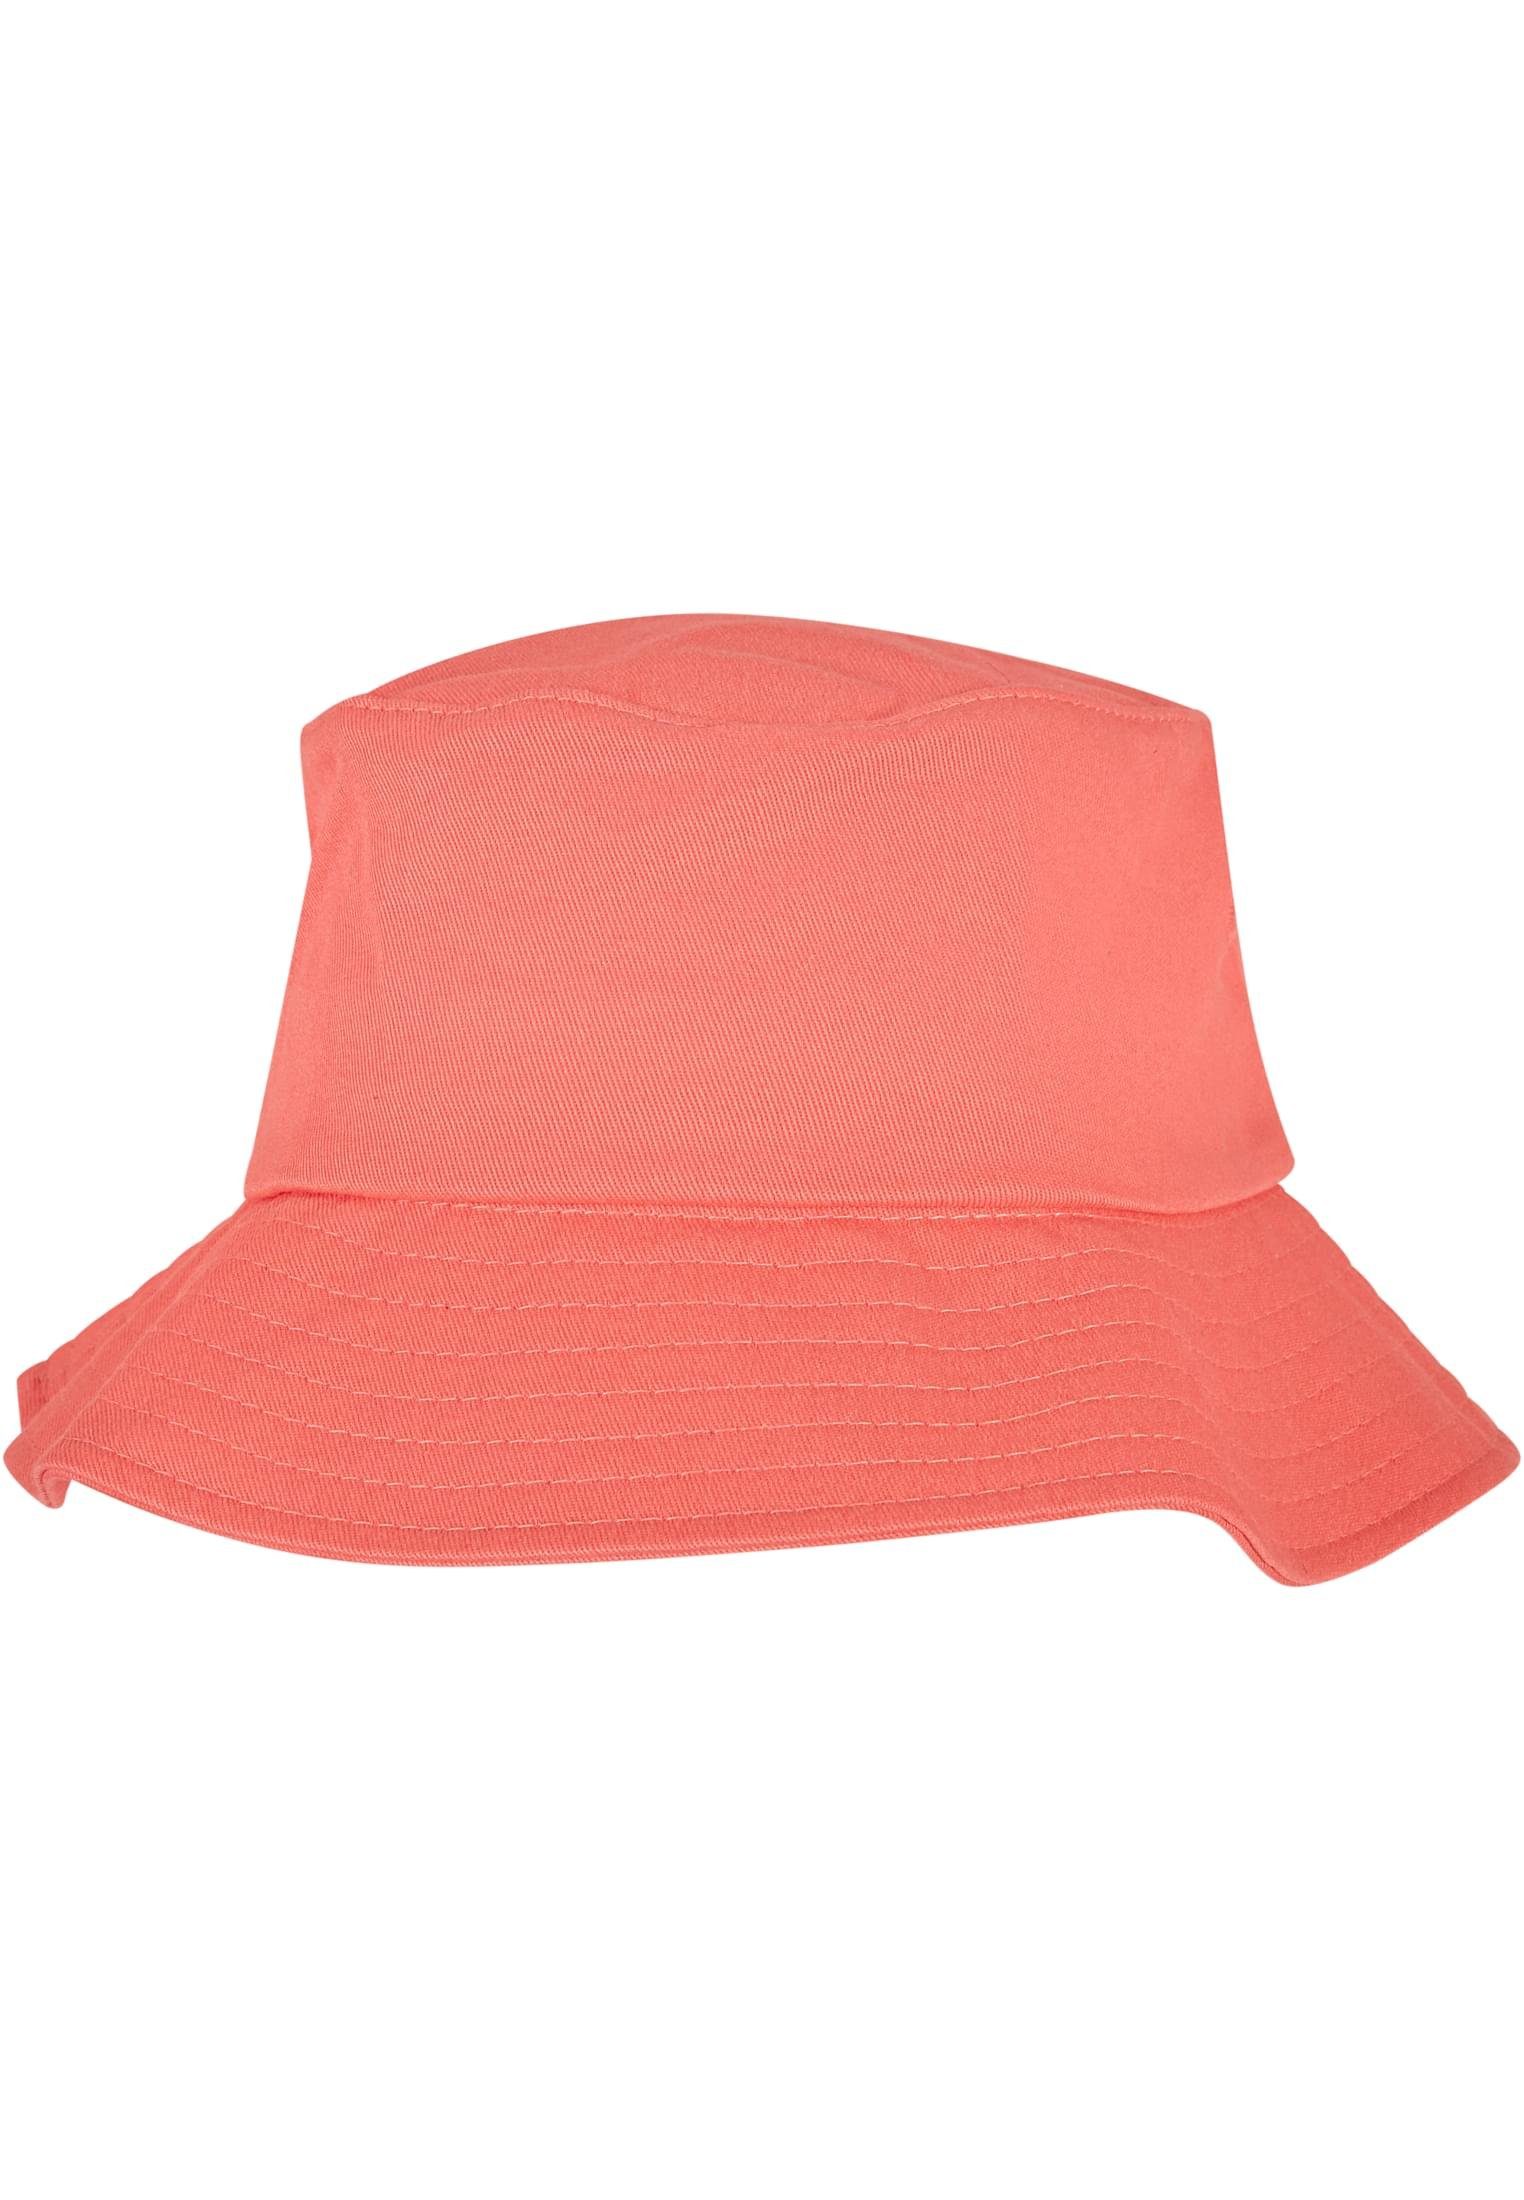 Bucket Twill Flexfit Accessoires Flexfit spicedcoral Hat Cotton Flex Cap